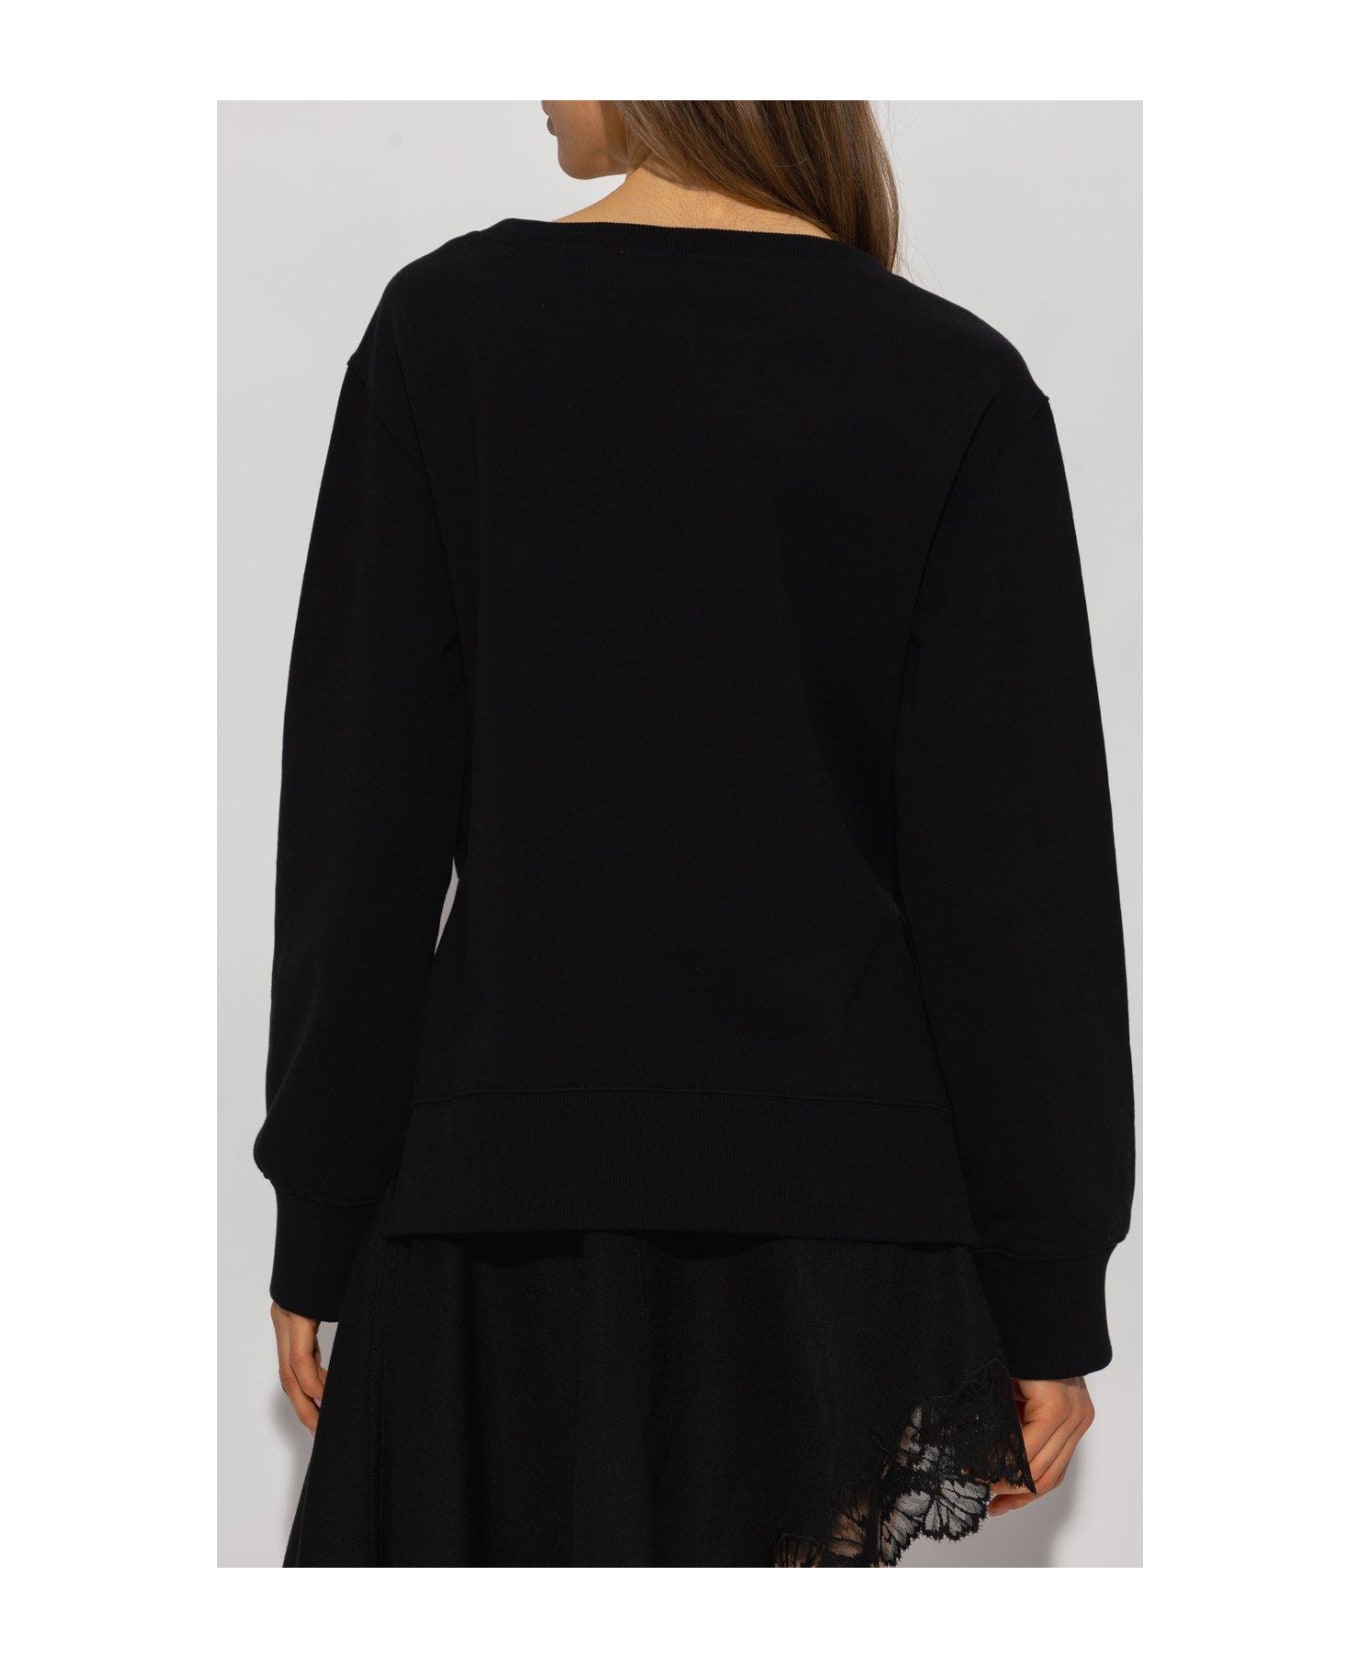 Stella McCartney Appliqued Sweatshirt - Black フリース